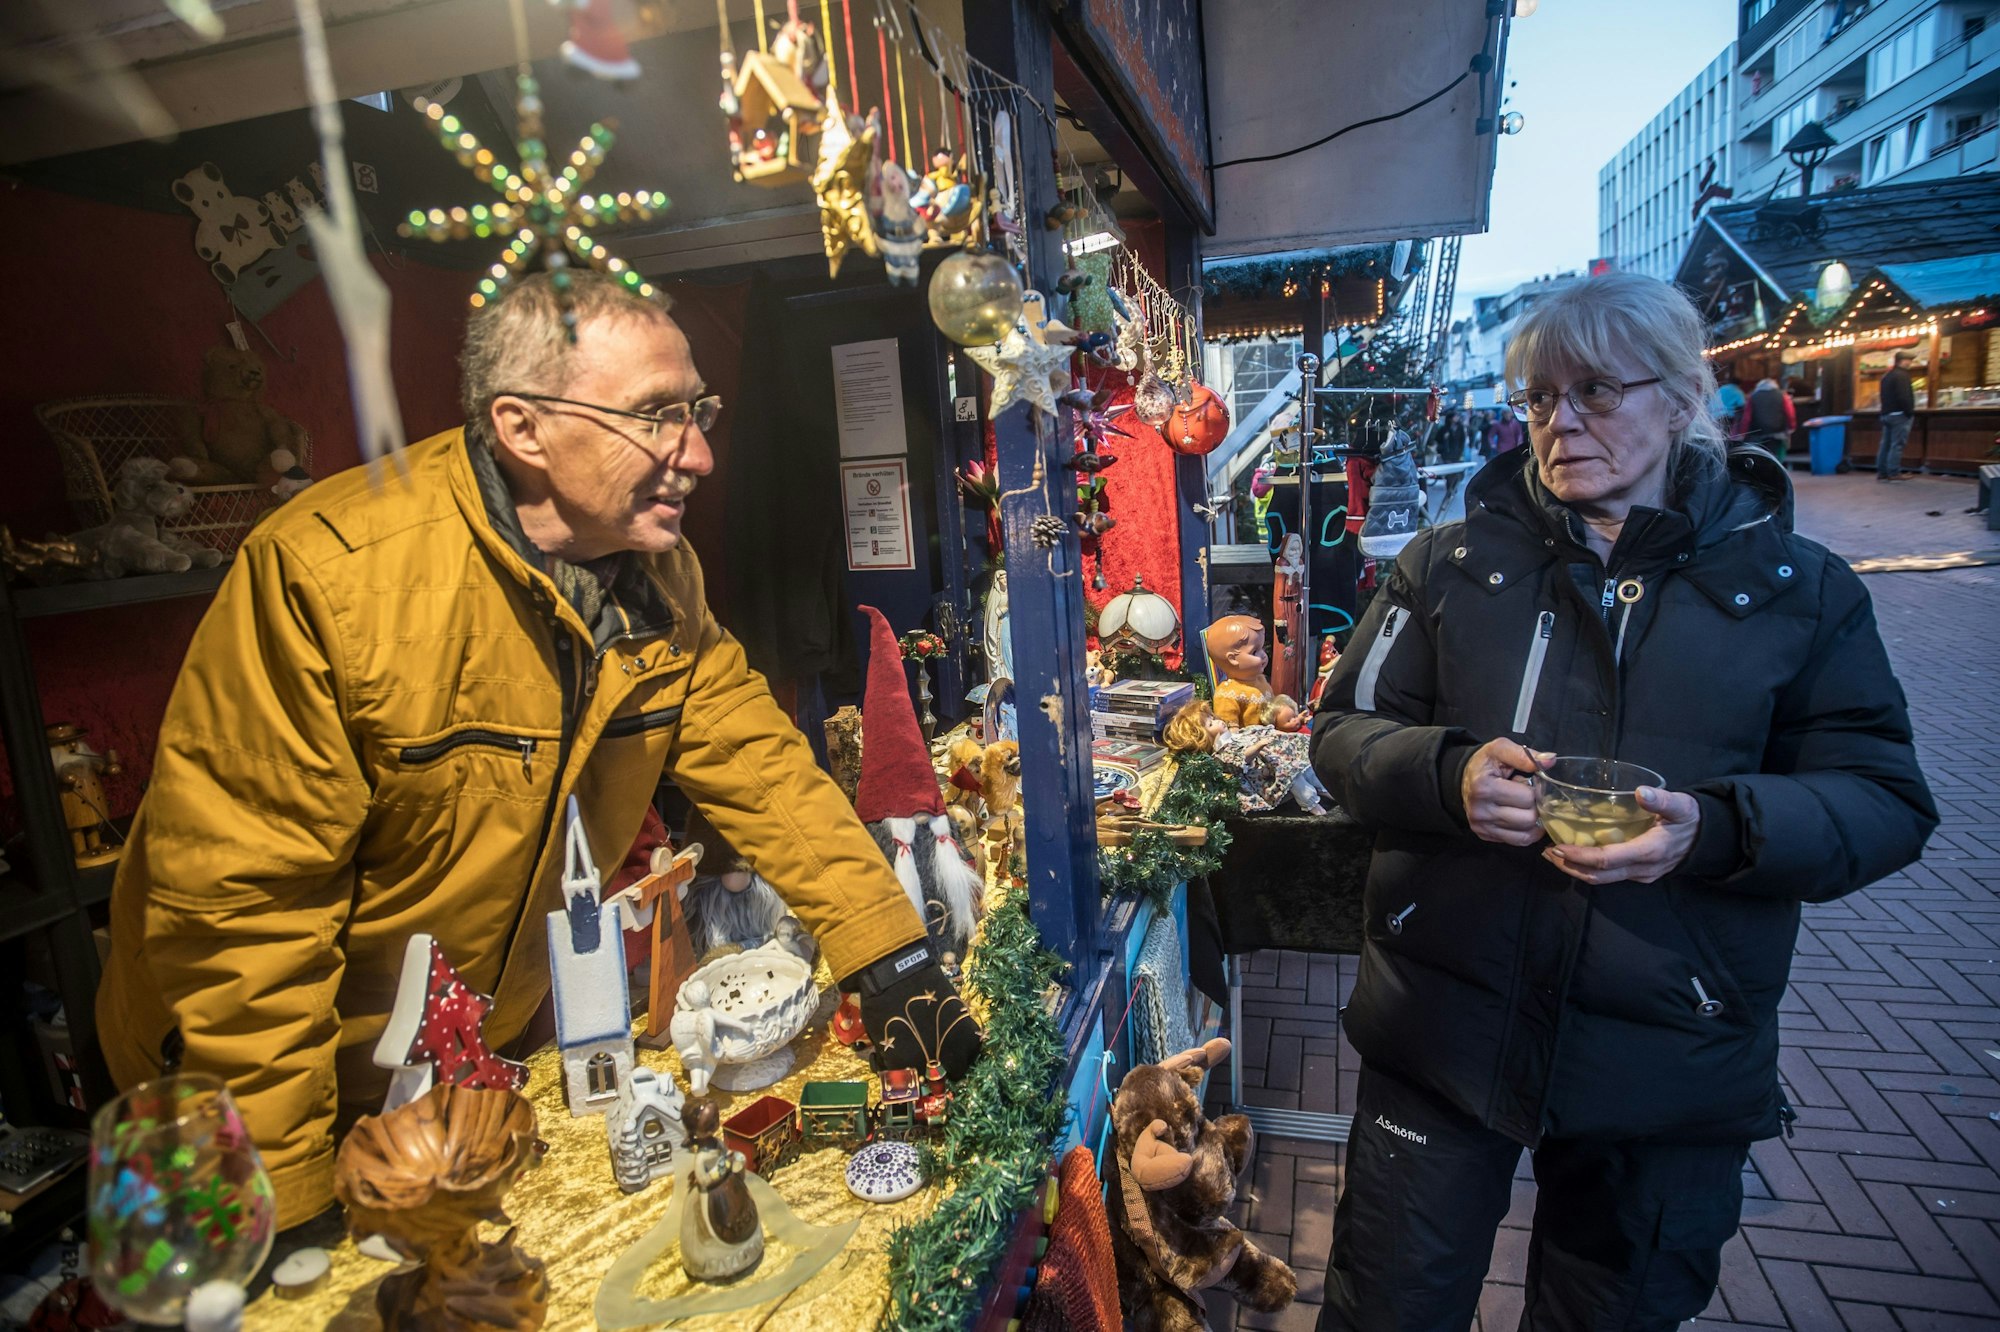 Barbara und Werner Kressner stehen für den Hilfsverein "Horizontes" am Eingang des Opladener Weihnachtsmarkts. Foto: Ralf Krieger